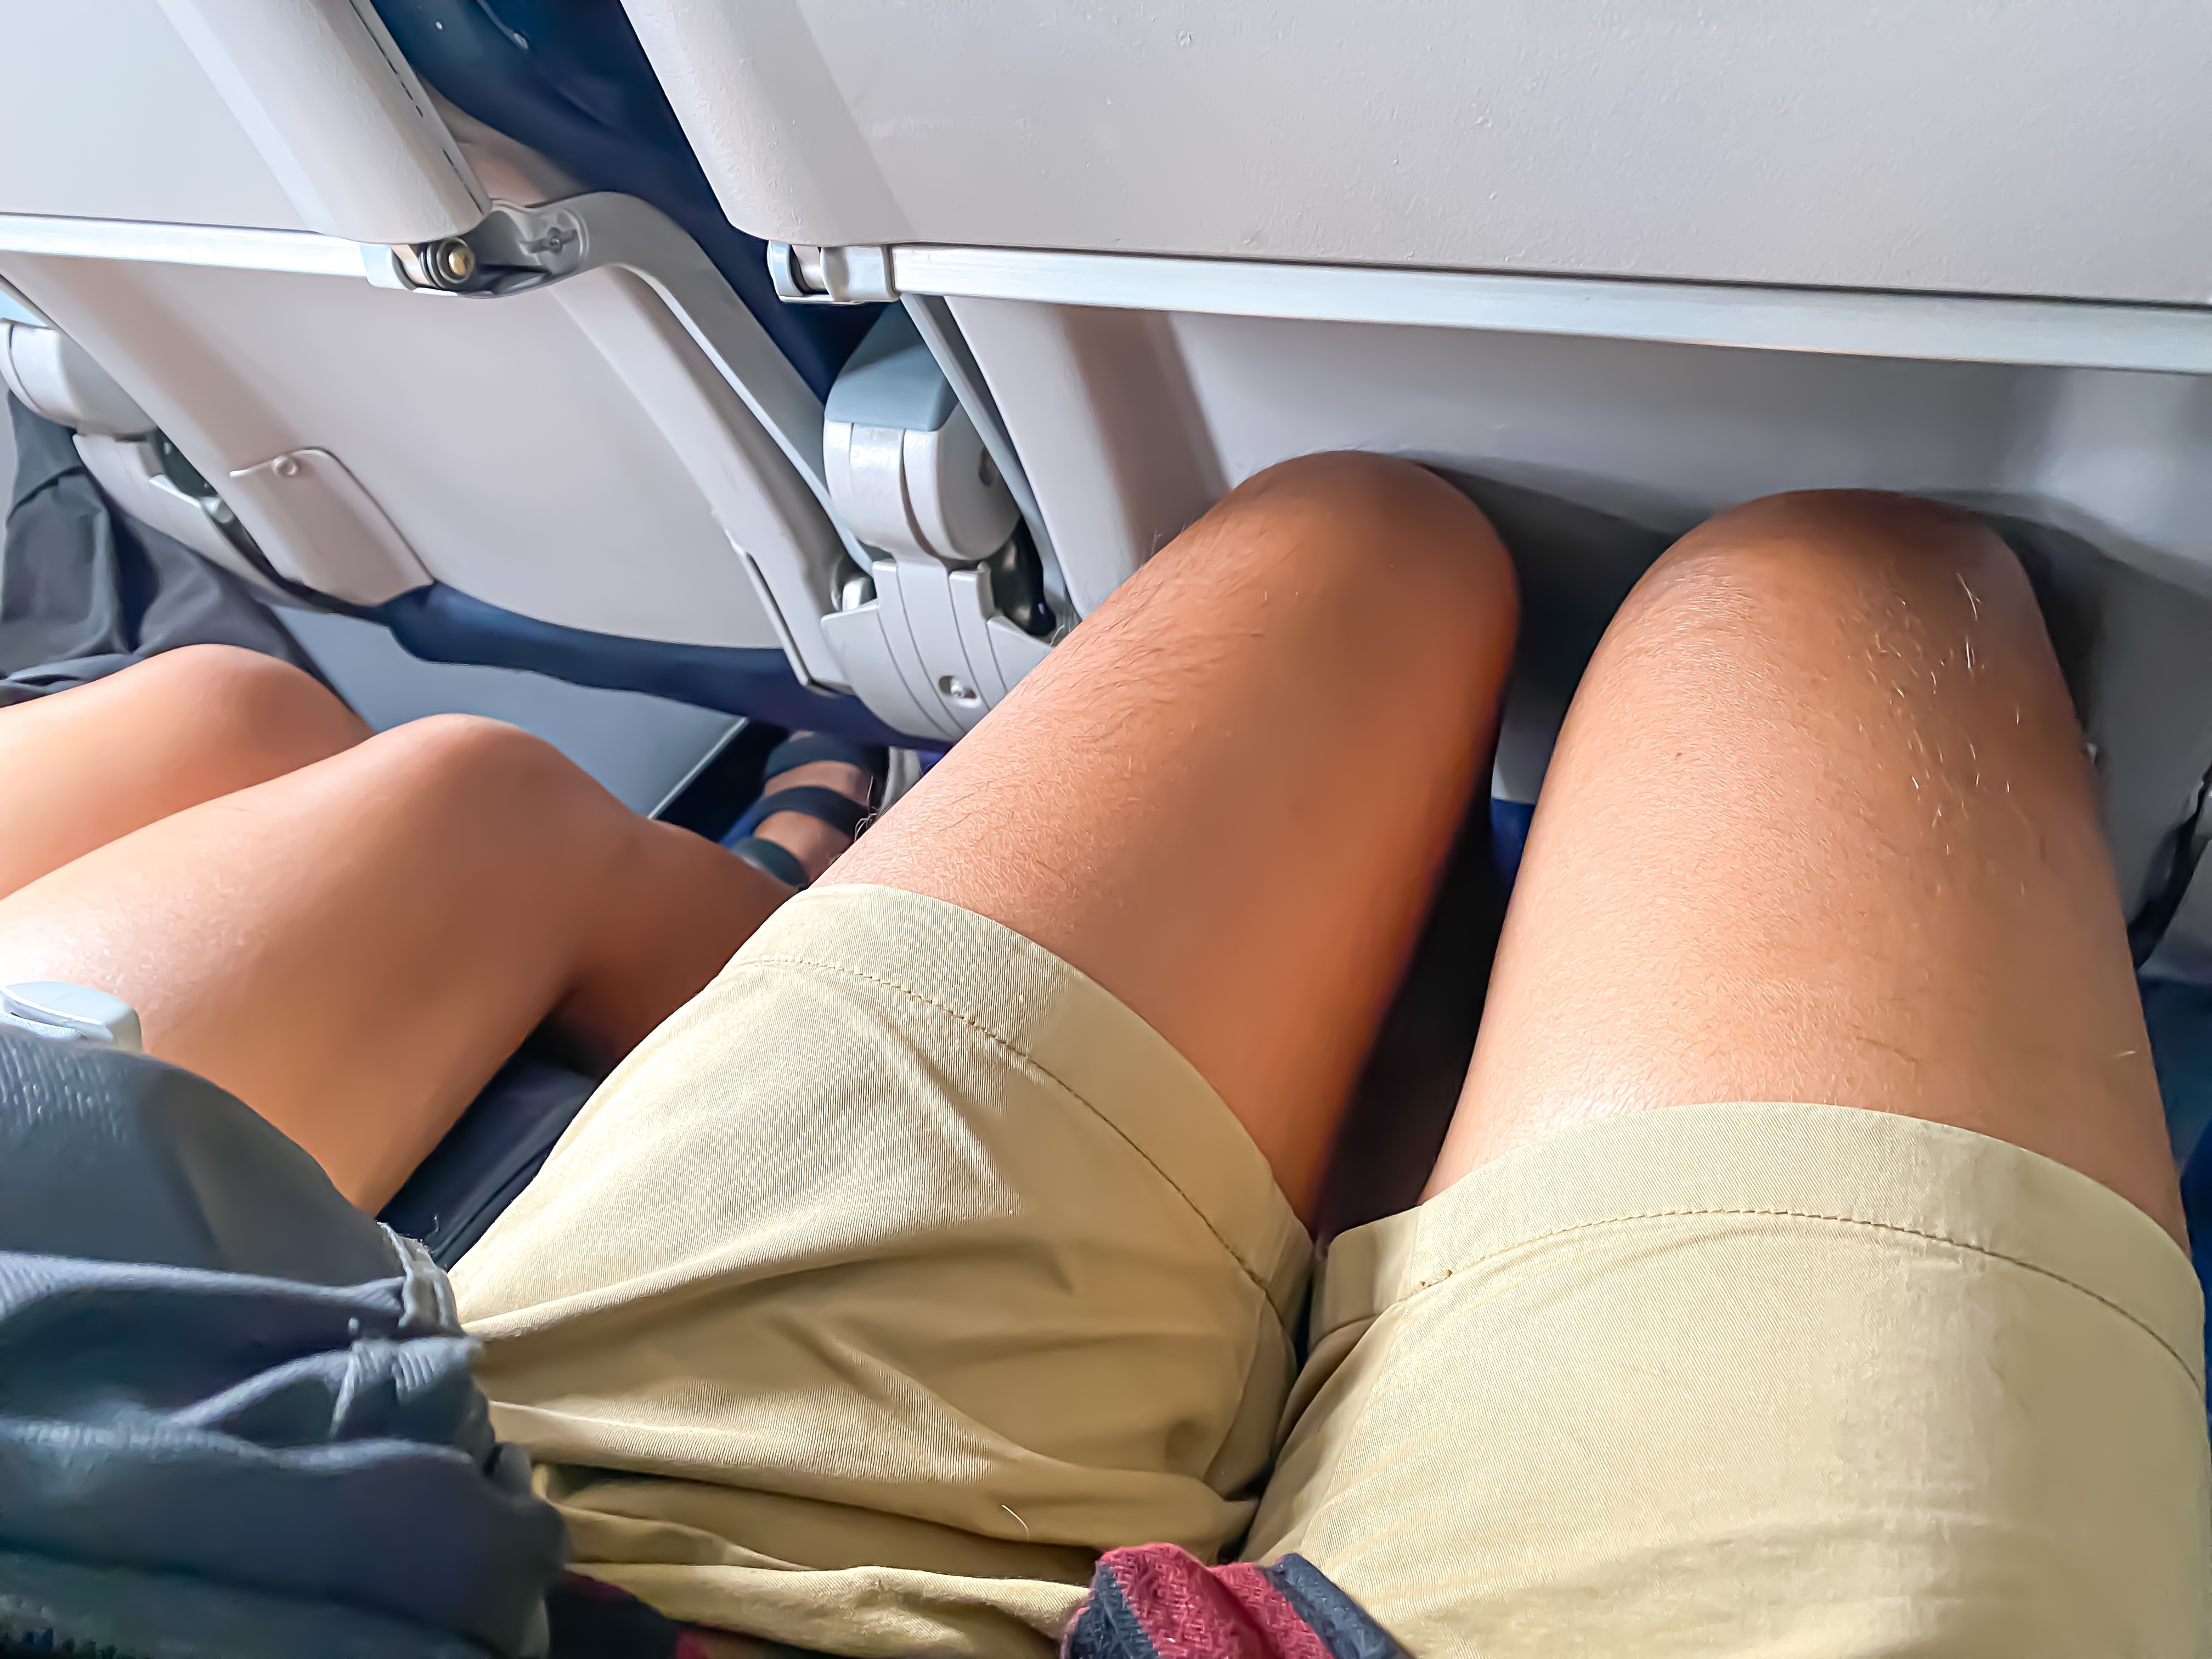 Piernas de personas sentadas en un avión | Fuente: Shutterstock